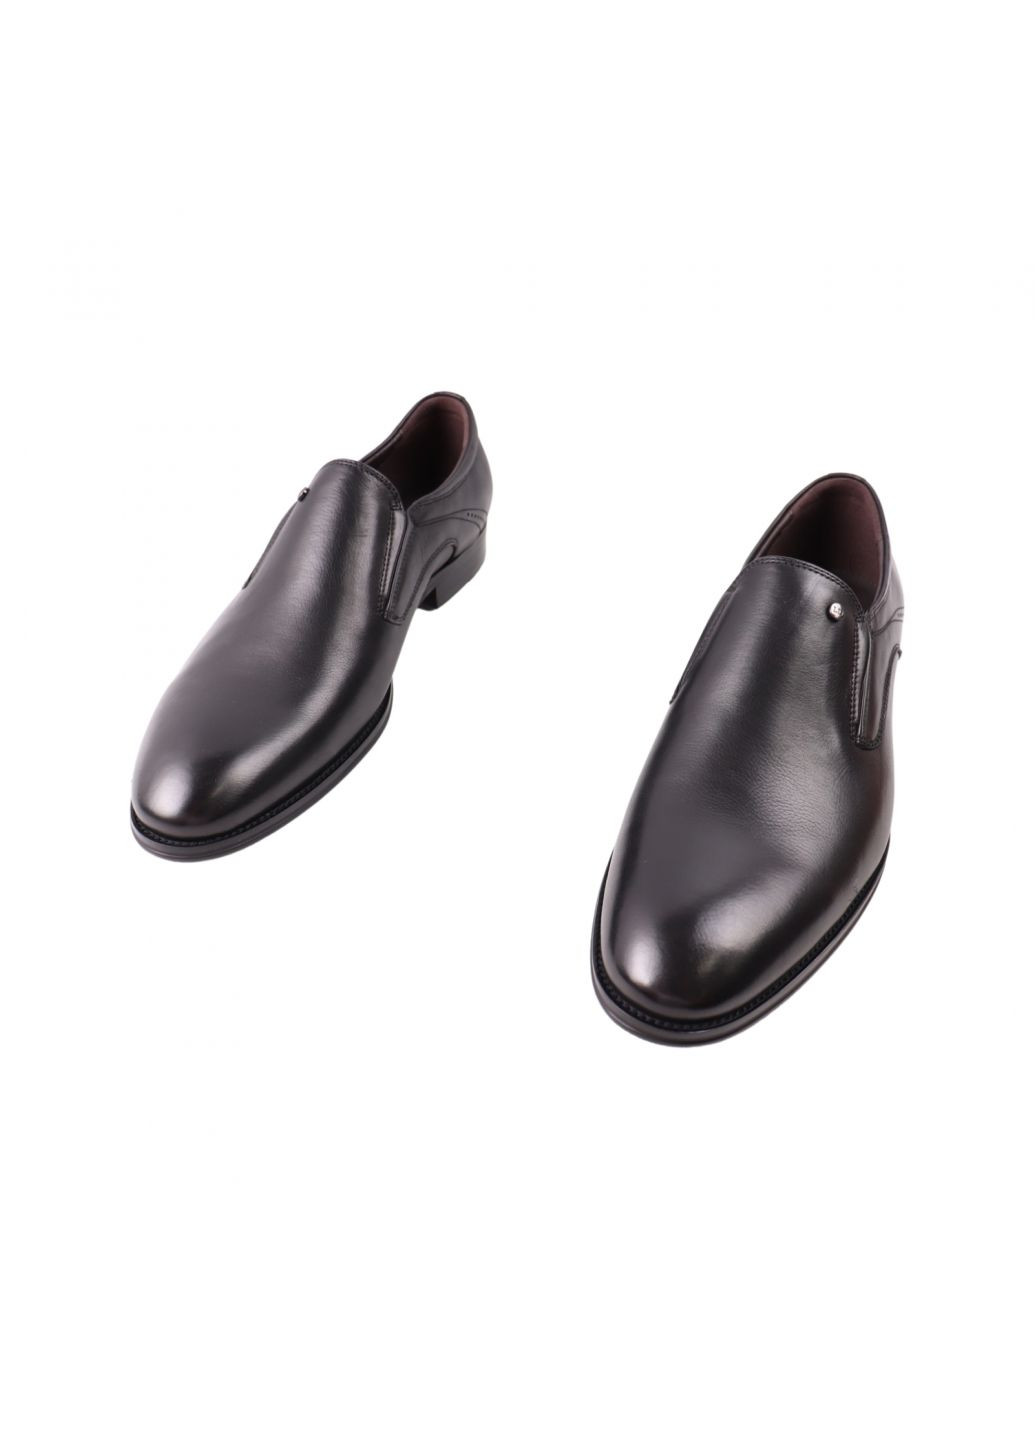 Туфлі чоловічі Lido Marinozi чорні натуральна шкіра Lido Marinozzi 306-23dt (261856598)